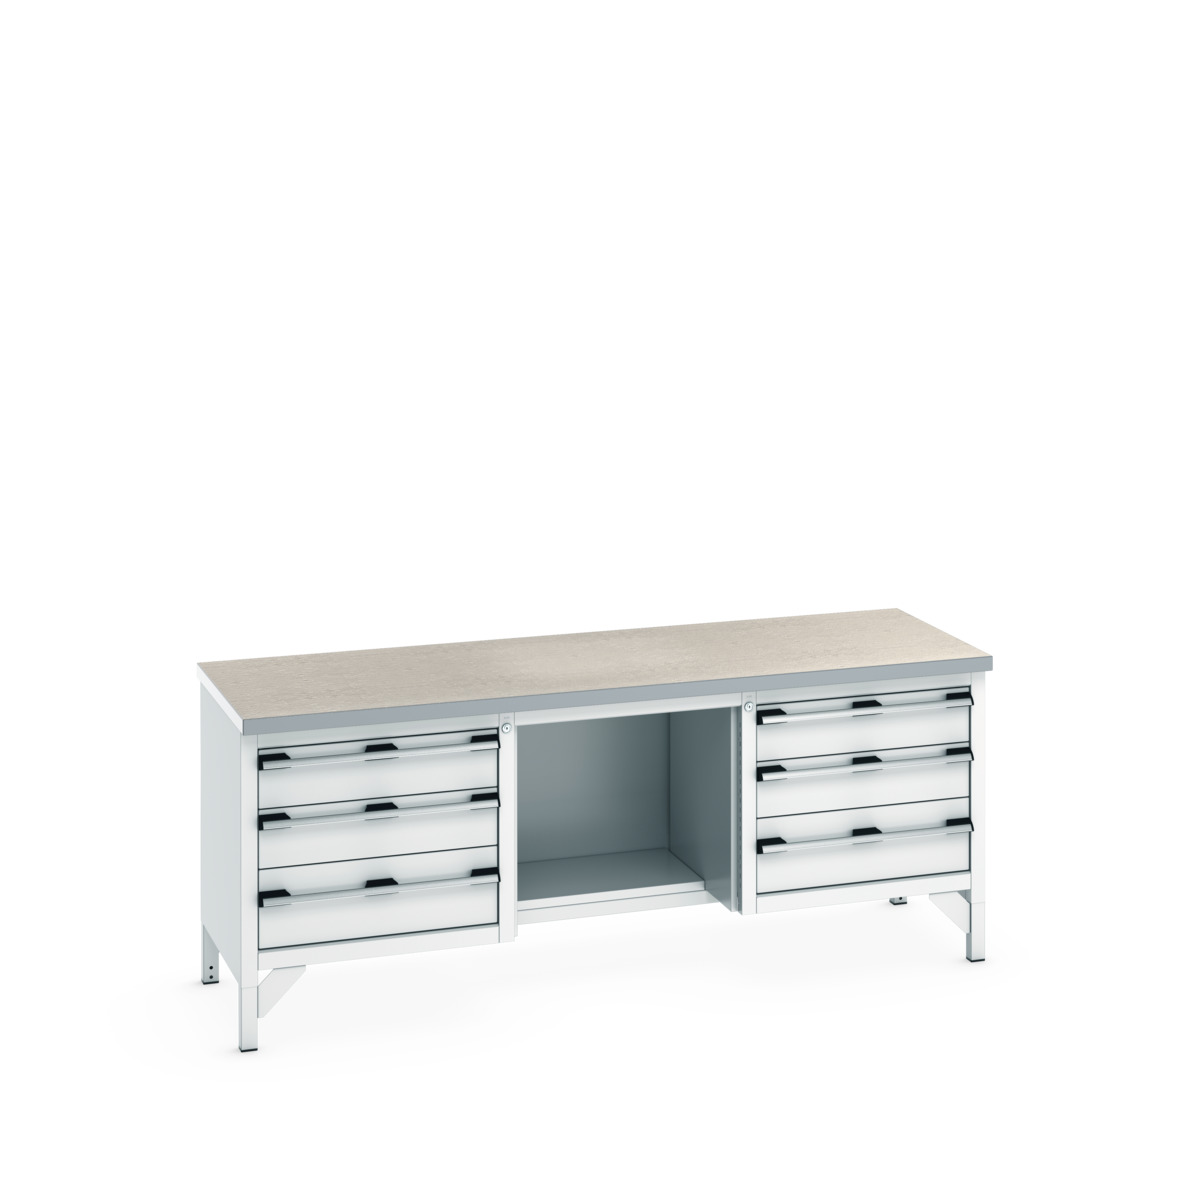 41002075.16V - cubio storage bench (lino)